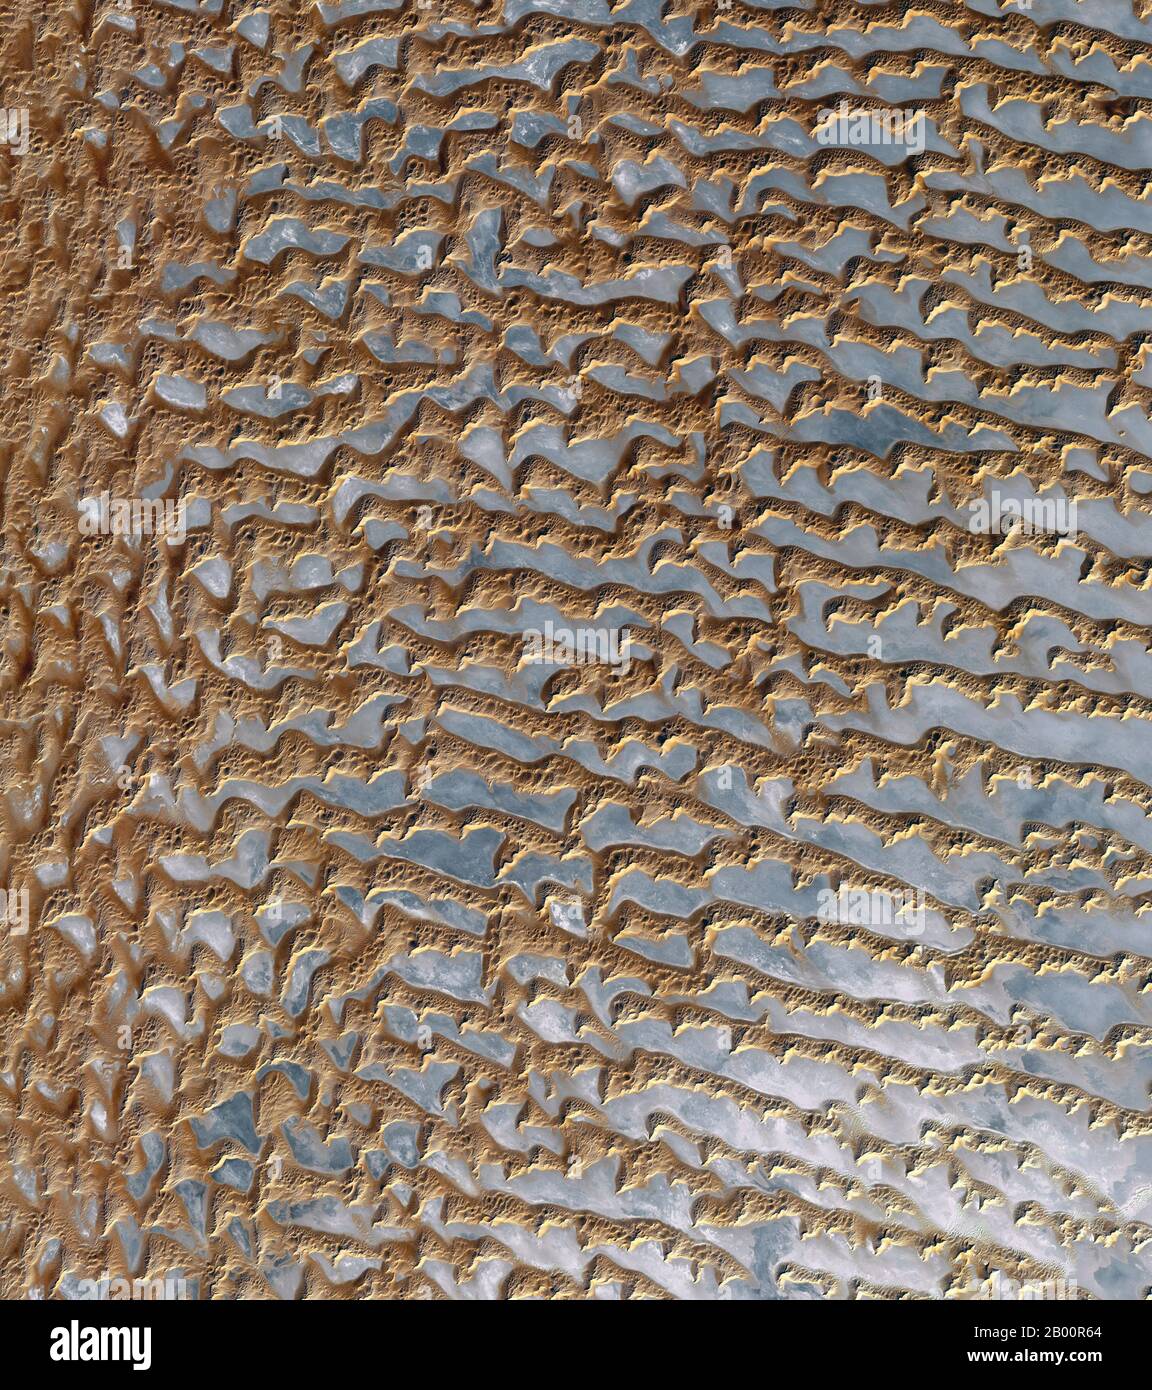 Arabien: Ein Blick aus dem Raum der Sanddünen in Rub' al Khali, ‘das leere Viertel’ auf Arabisch, einer riesigen und trockenen Wüste, die den größten Teil des südlichen Drittels der Arabischen Halbinsel umfasst. Das Bild, das vom Advanced Spaceborne Thermal Emission and Reflection Radiometer (ASTER) an Bord des NASA-Satelliten Terra aufgenommen wurde, zeigt Dünen als braun mit grauen Regionen, die die darunter liegenden Kiesebenen sind. Die Entfernung zwischen parallelen Dünen, die 330 Meter (1,080 Fuß) in der Höhe erreichen können, ist etwa 1.5 bis 2.5 km (0.9 bis 1.6 Meilen). Das Gebiet ist weder bewohnt noch von Menschen durchzogen, obwohl es ein Leben gibt. Stockfoto